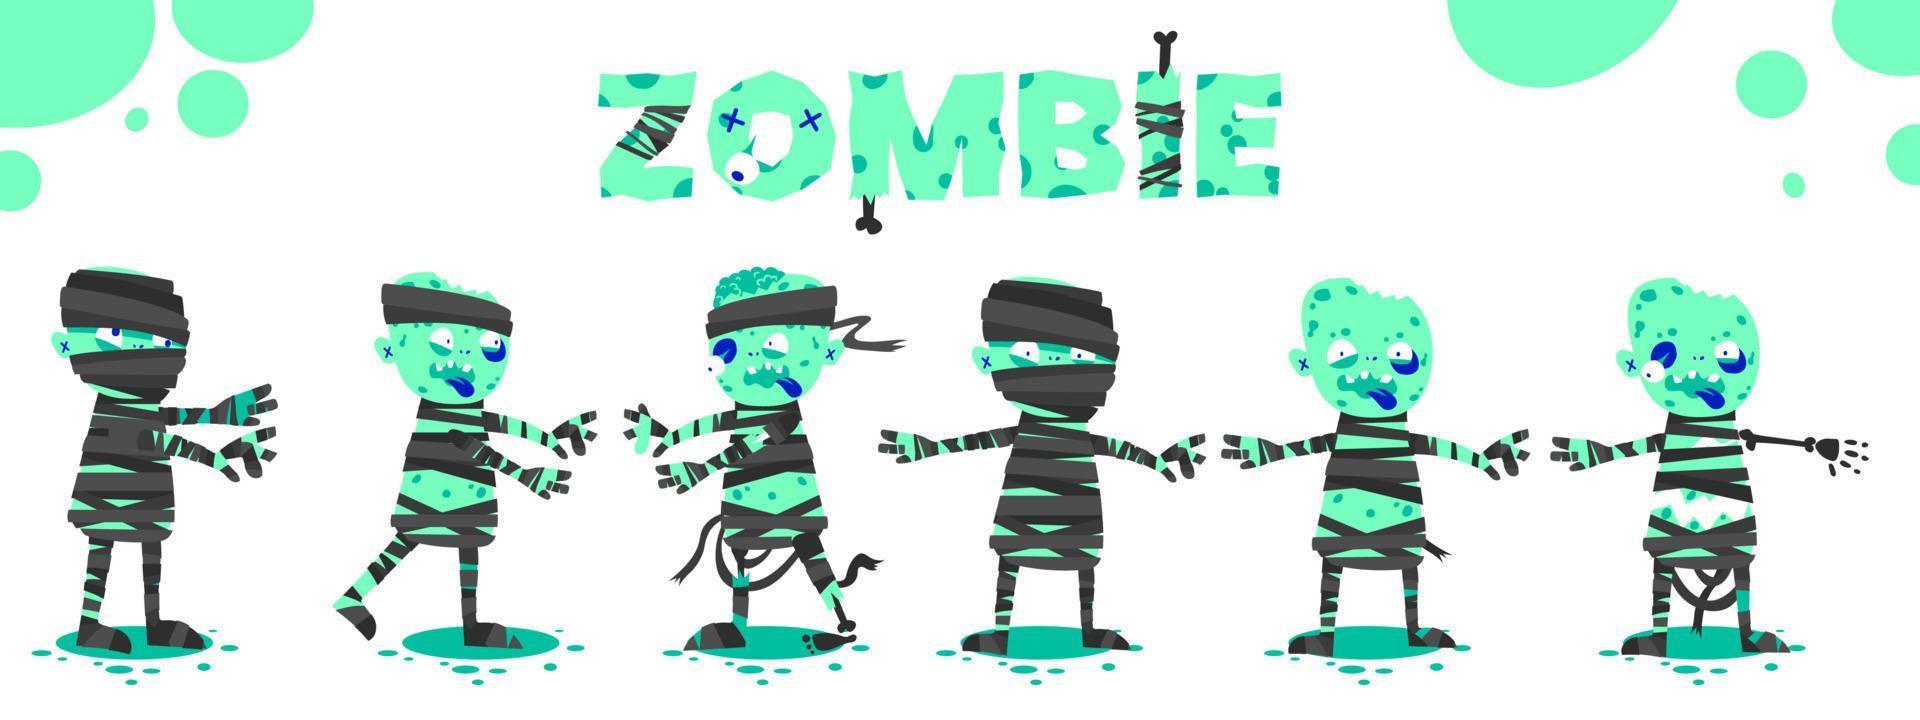 Halloween-Cartoon-Monster-Aufkleber-Set. lustige zeichnungen von grüner zombie toter wandermumie gruseliger charakter kostüm kit vektorillustration vektor